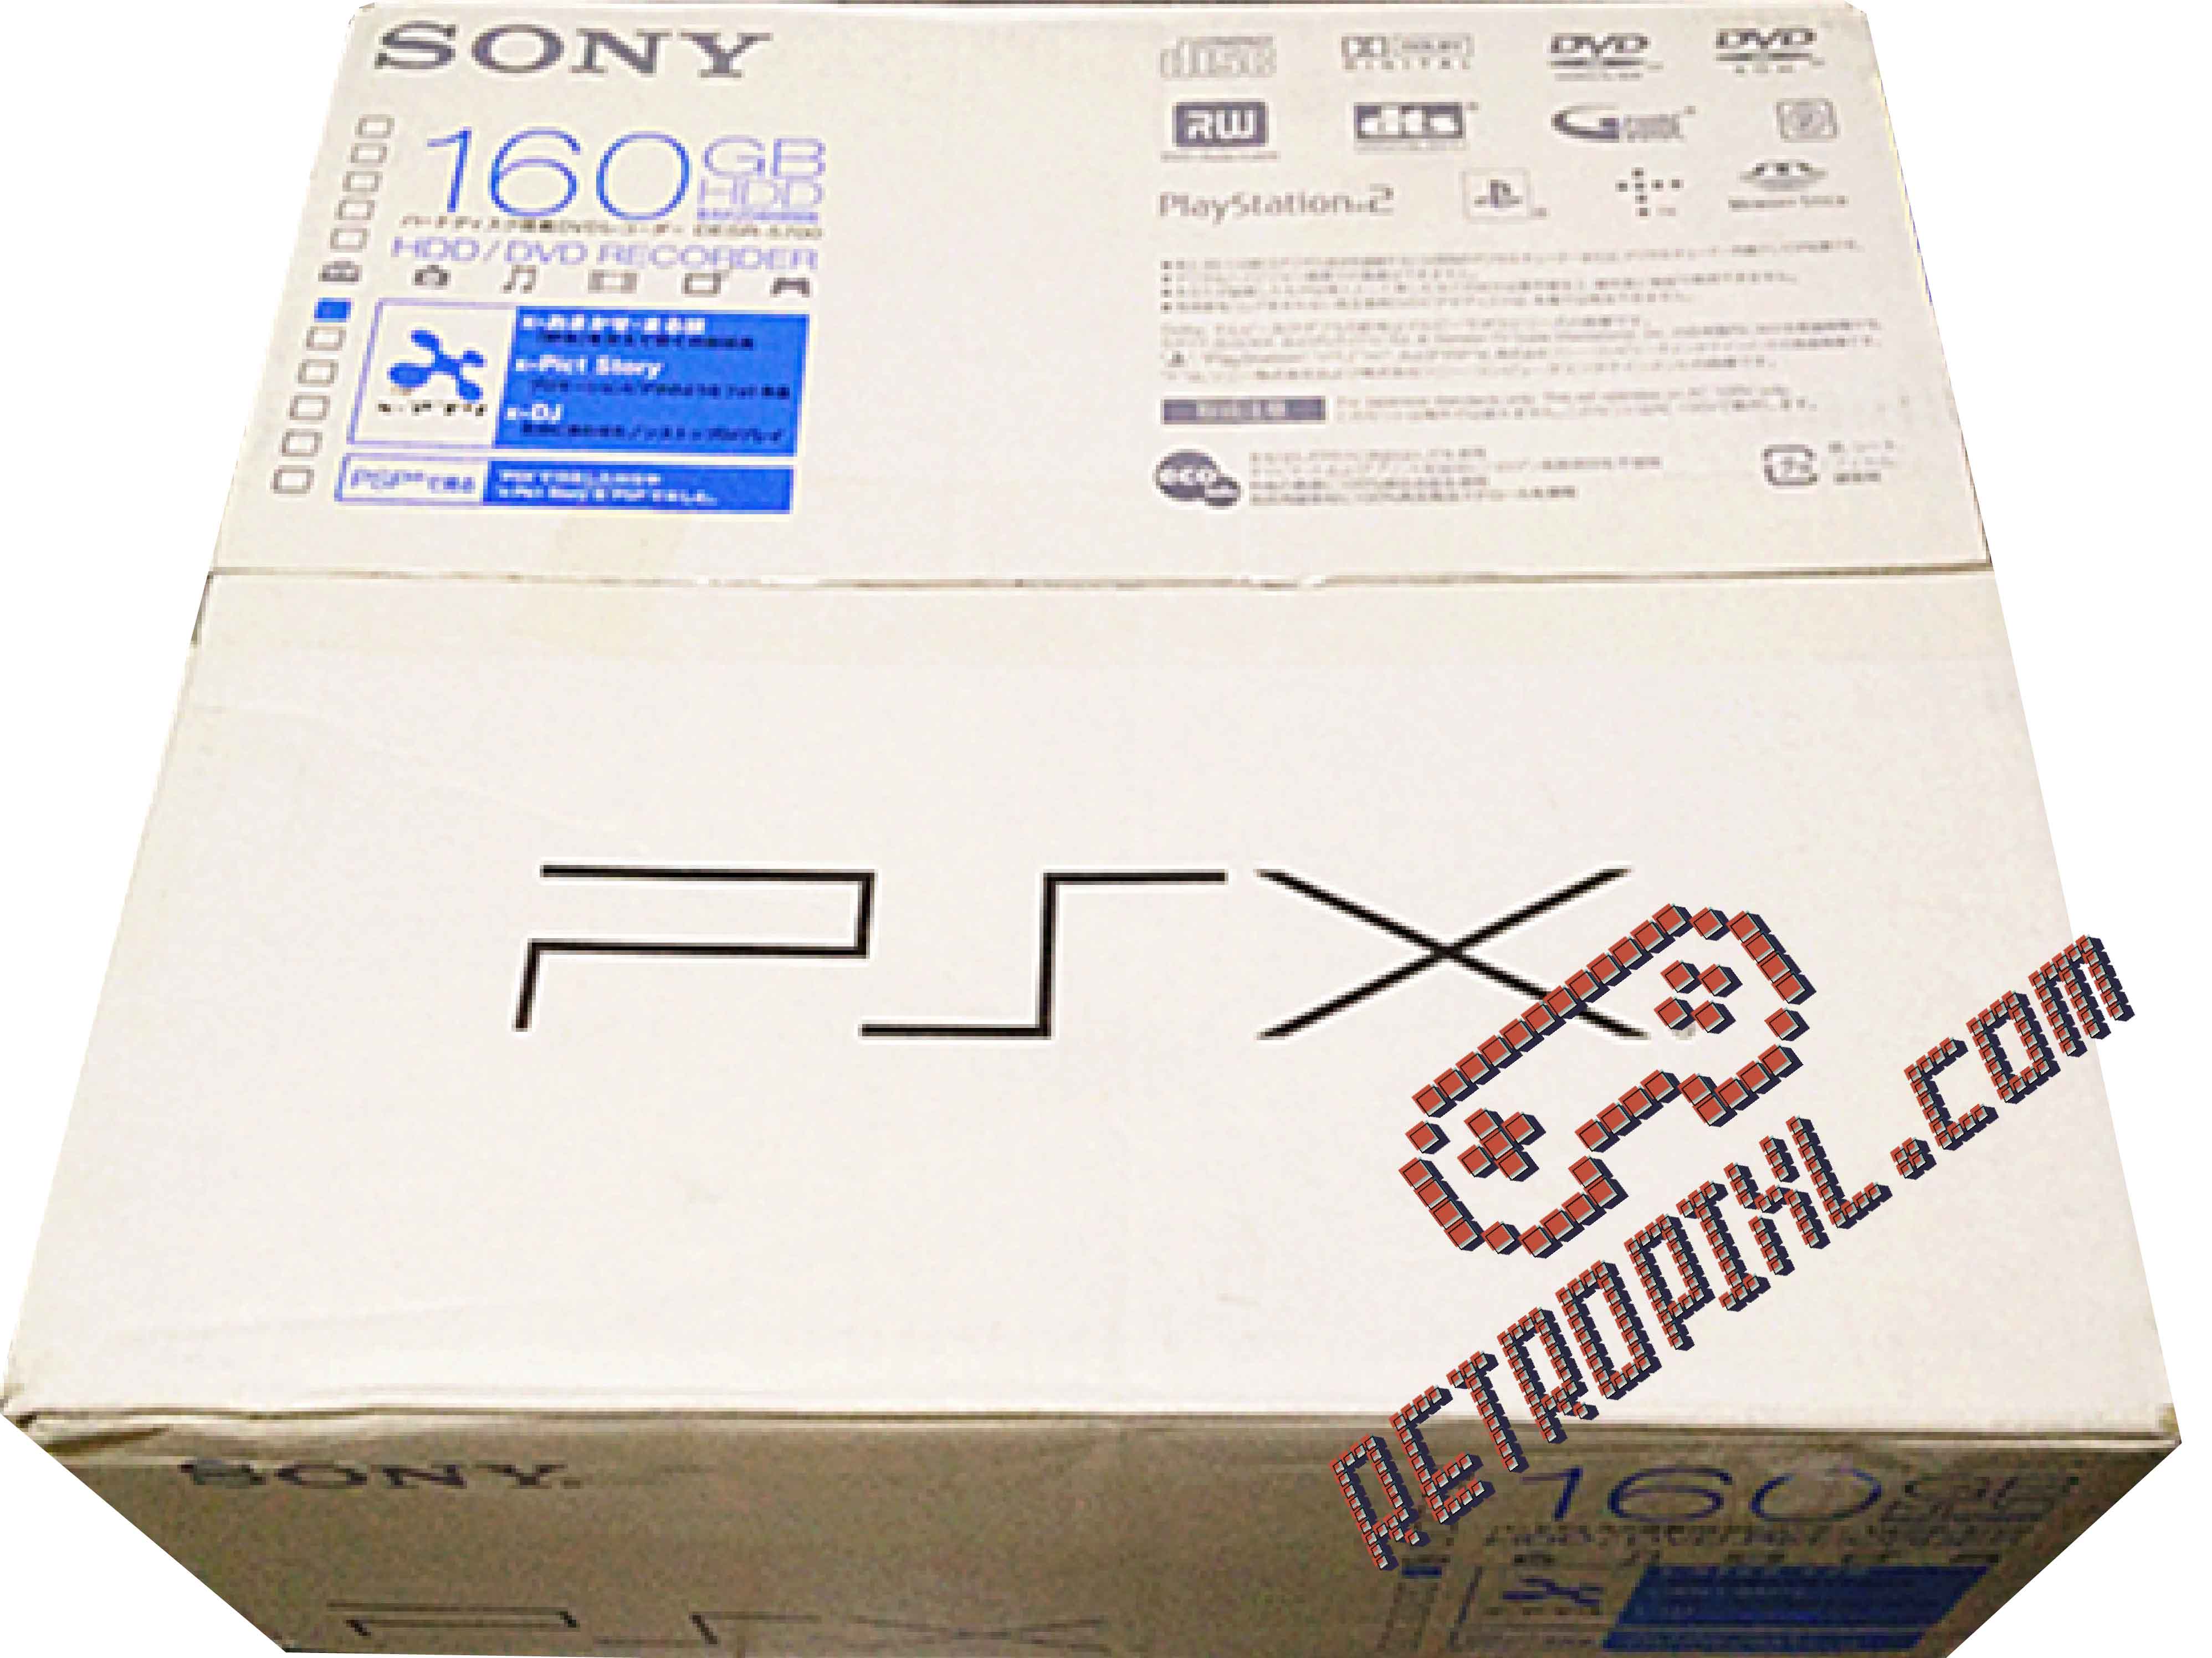 Sony PSX DESR 5700